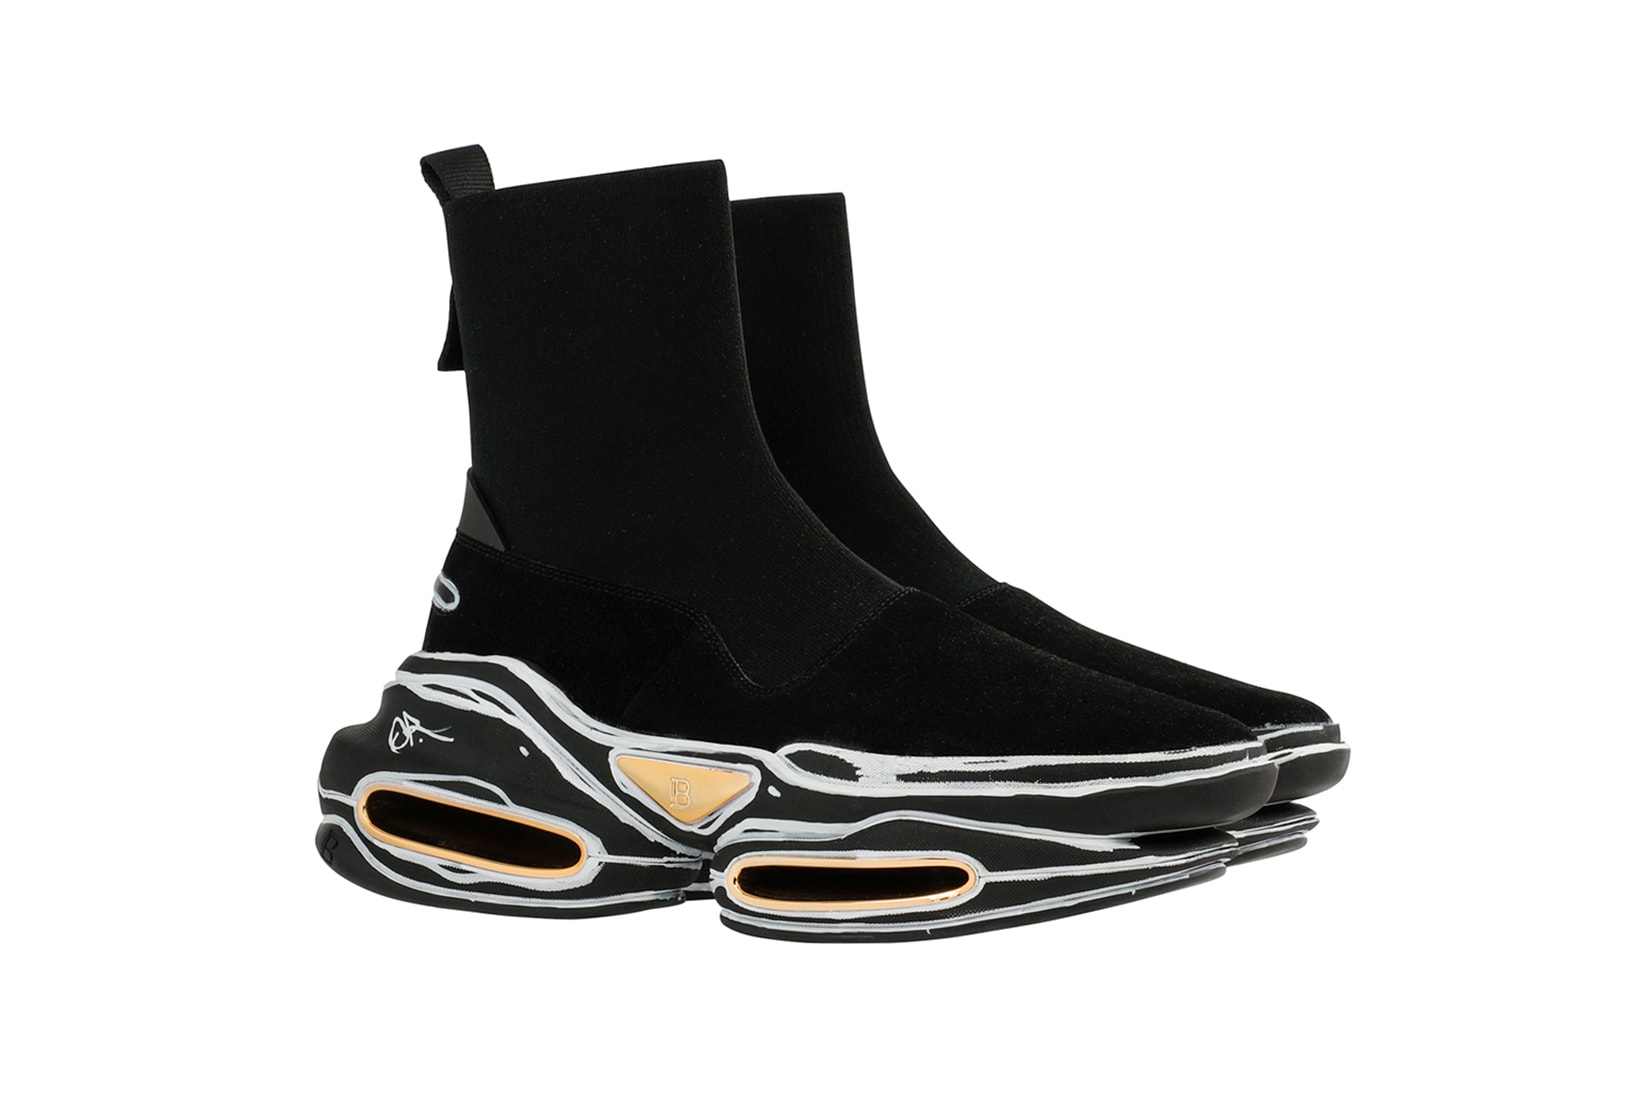 balmain olivier rousteing custom designer sneakers black sneakerhead shoes footwear